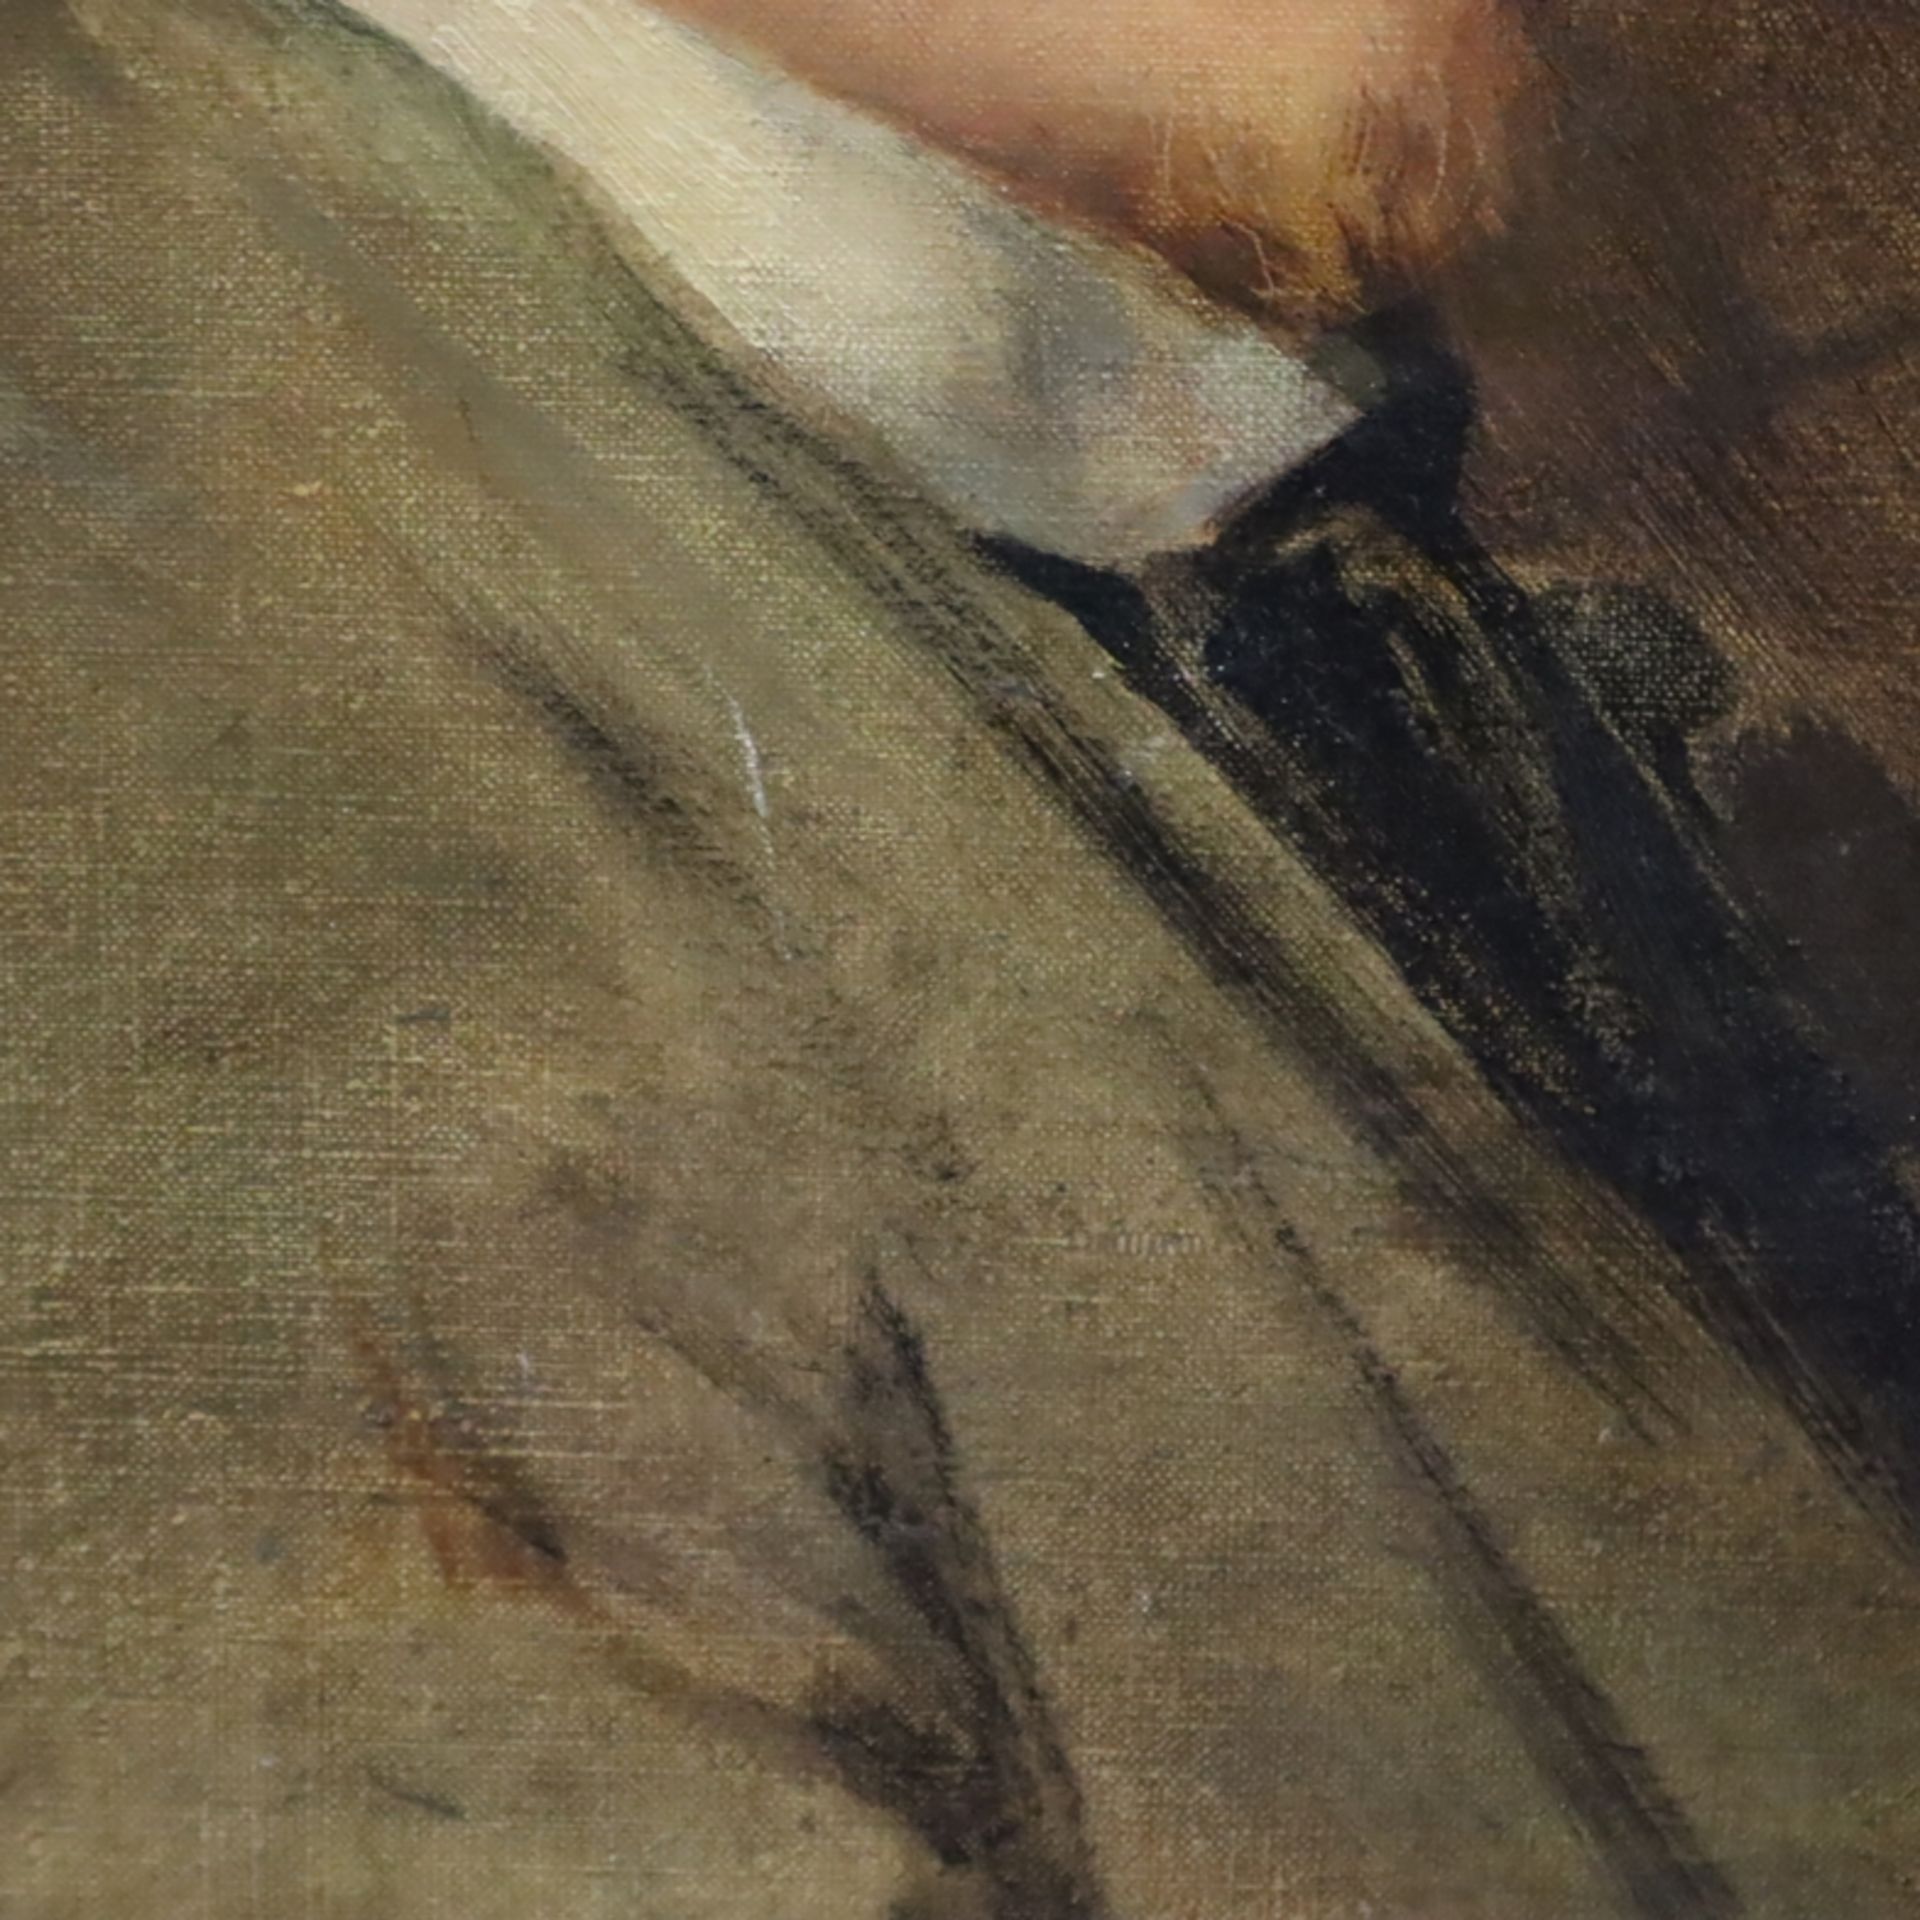 Bildnismaler um 1900- Eindringliches Portrait eines jungen Mannes mit blondem Haar, Öl auf Leinwand - Bild 4 aus 8